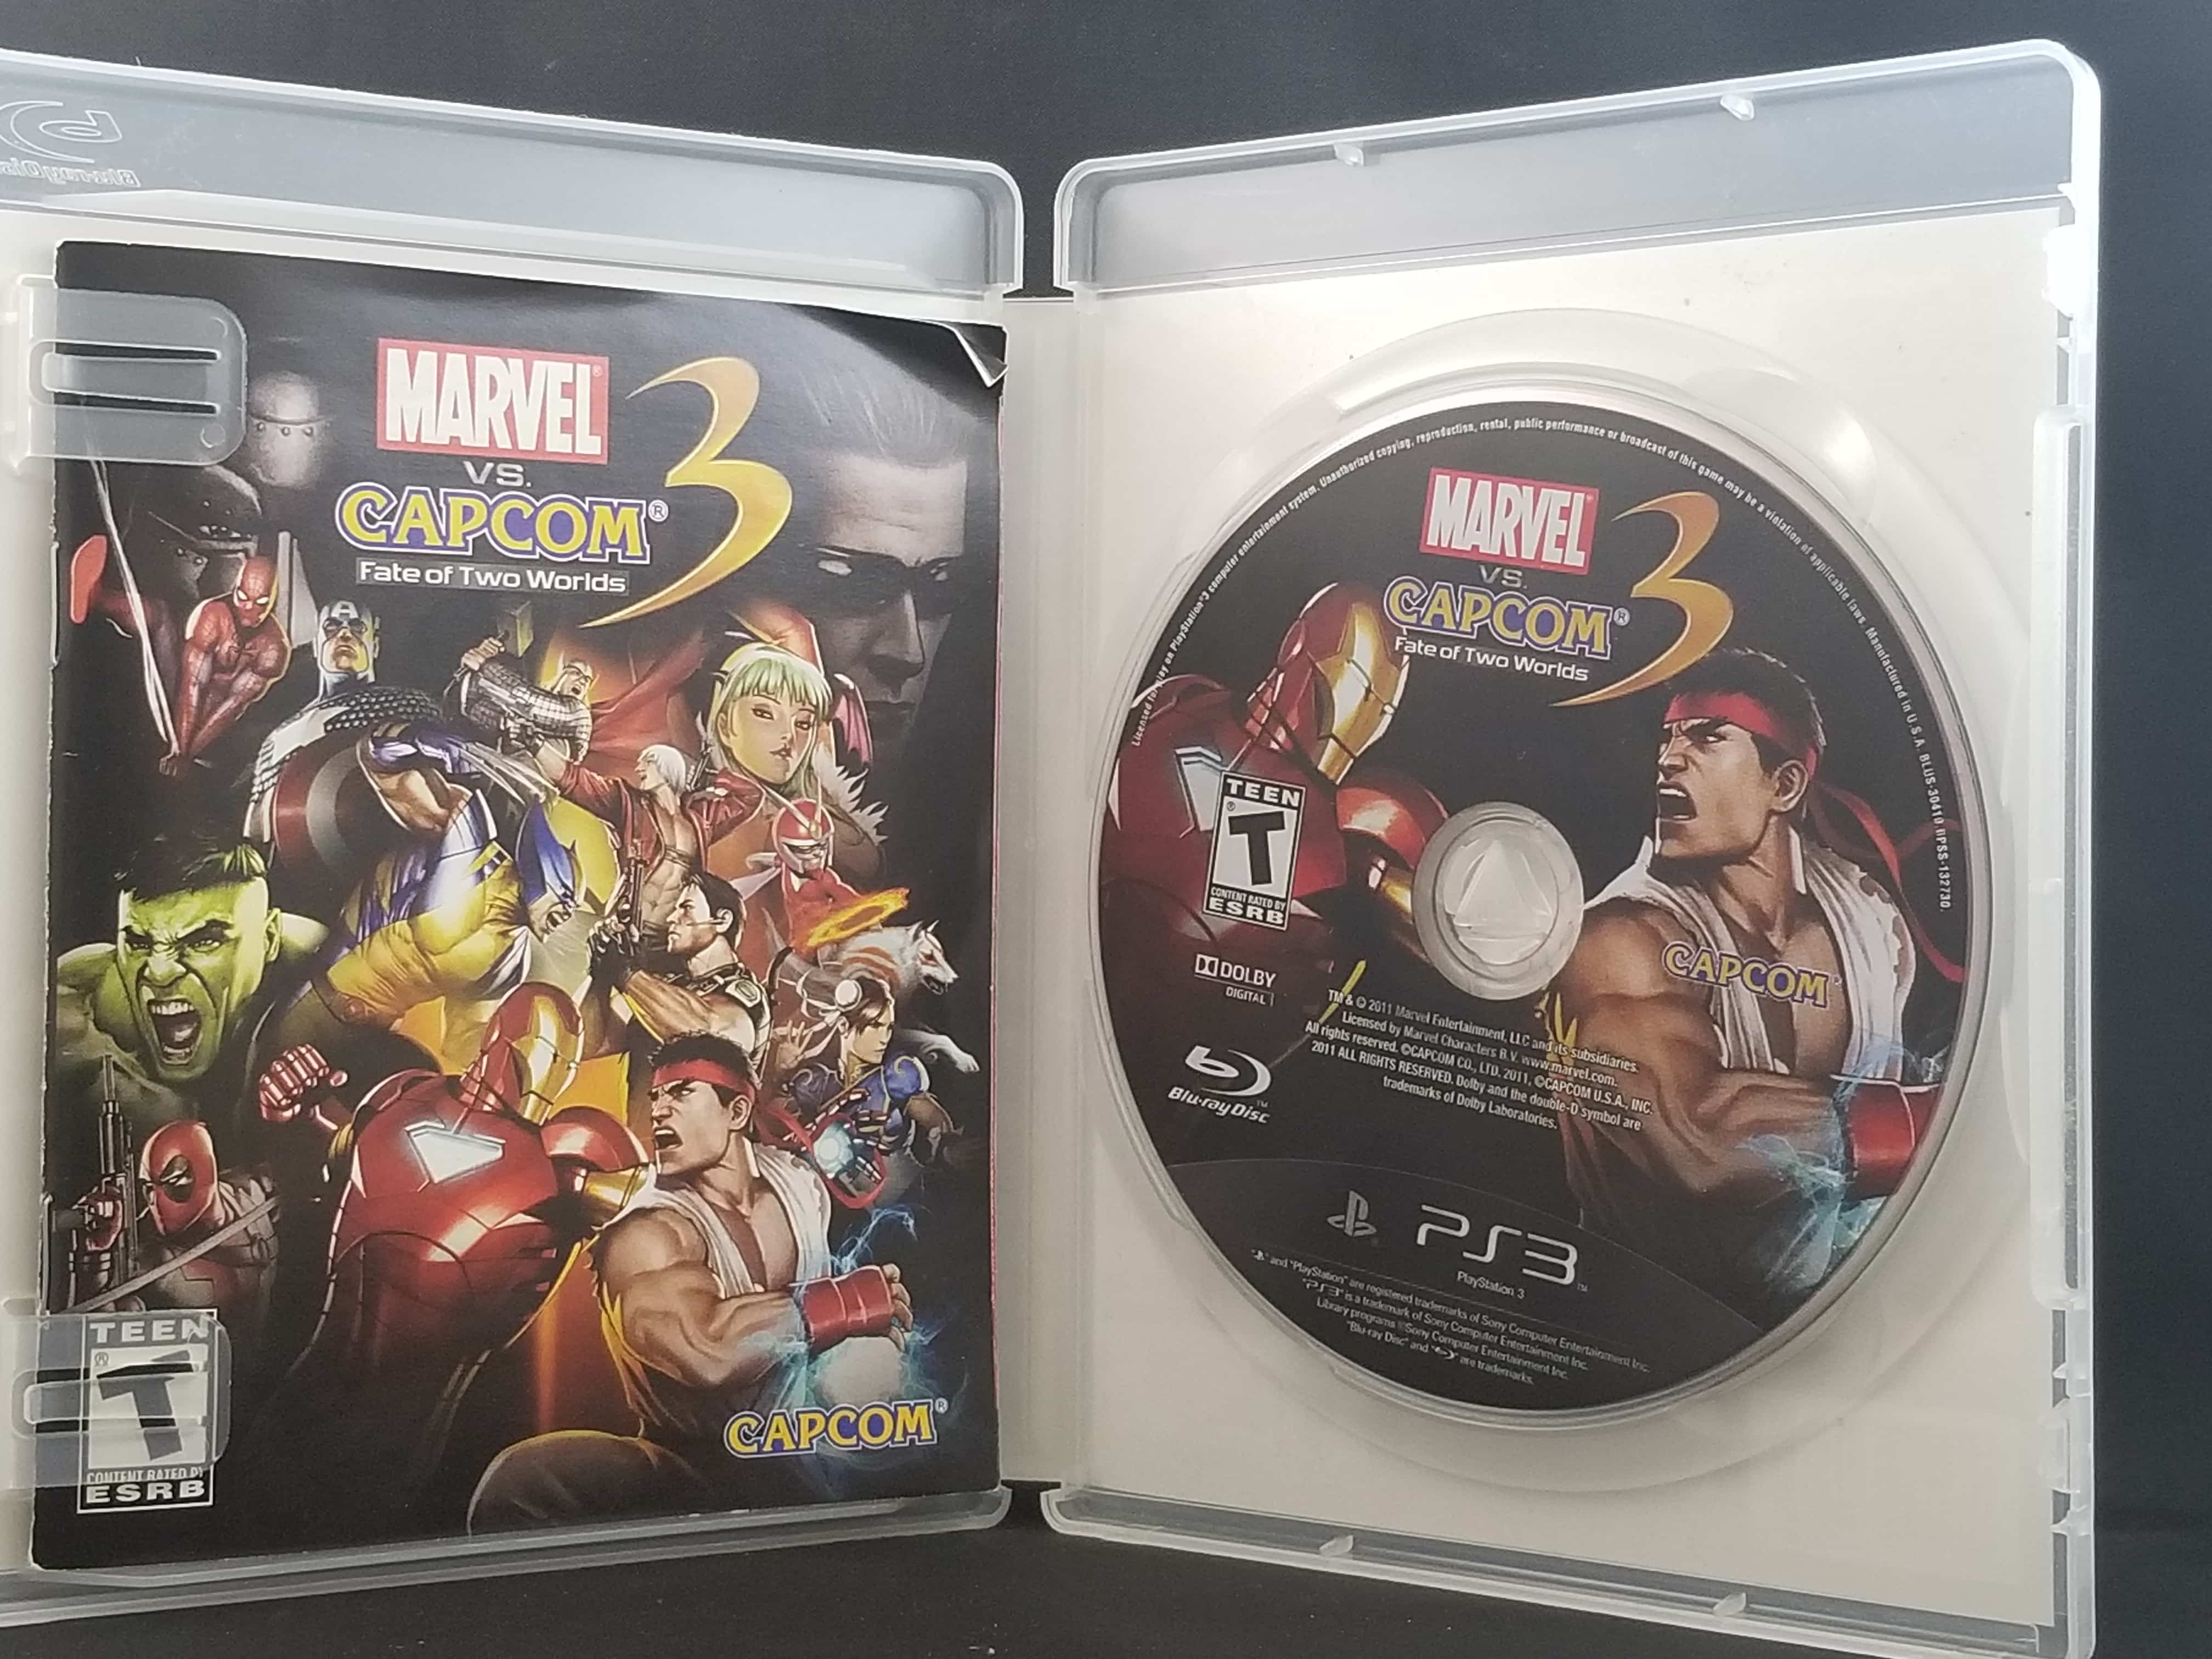 Jogo Marvel Vs. Capcom 3: Fate of Two Worlds - PS3 - MeuGameUsado